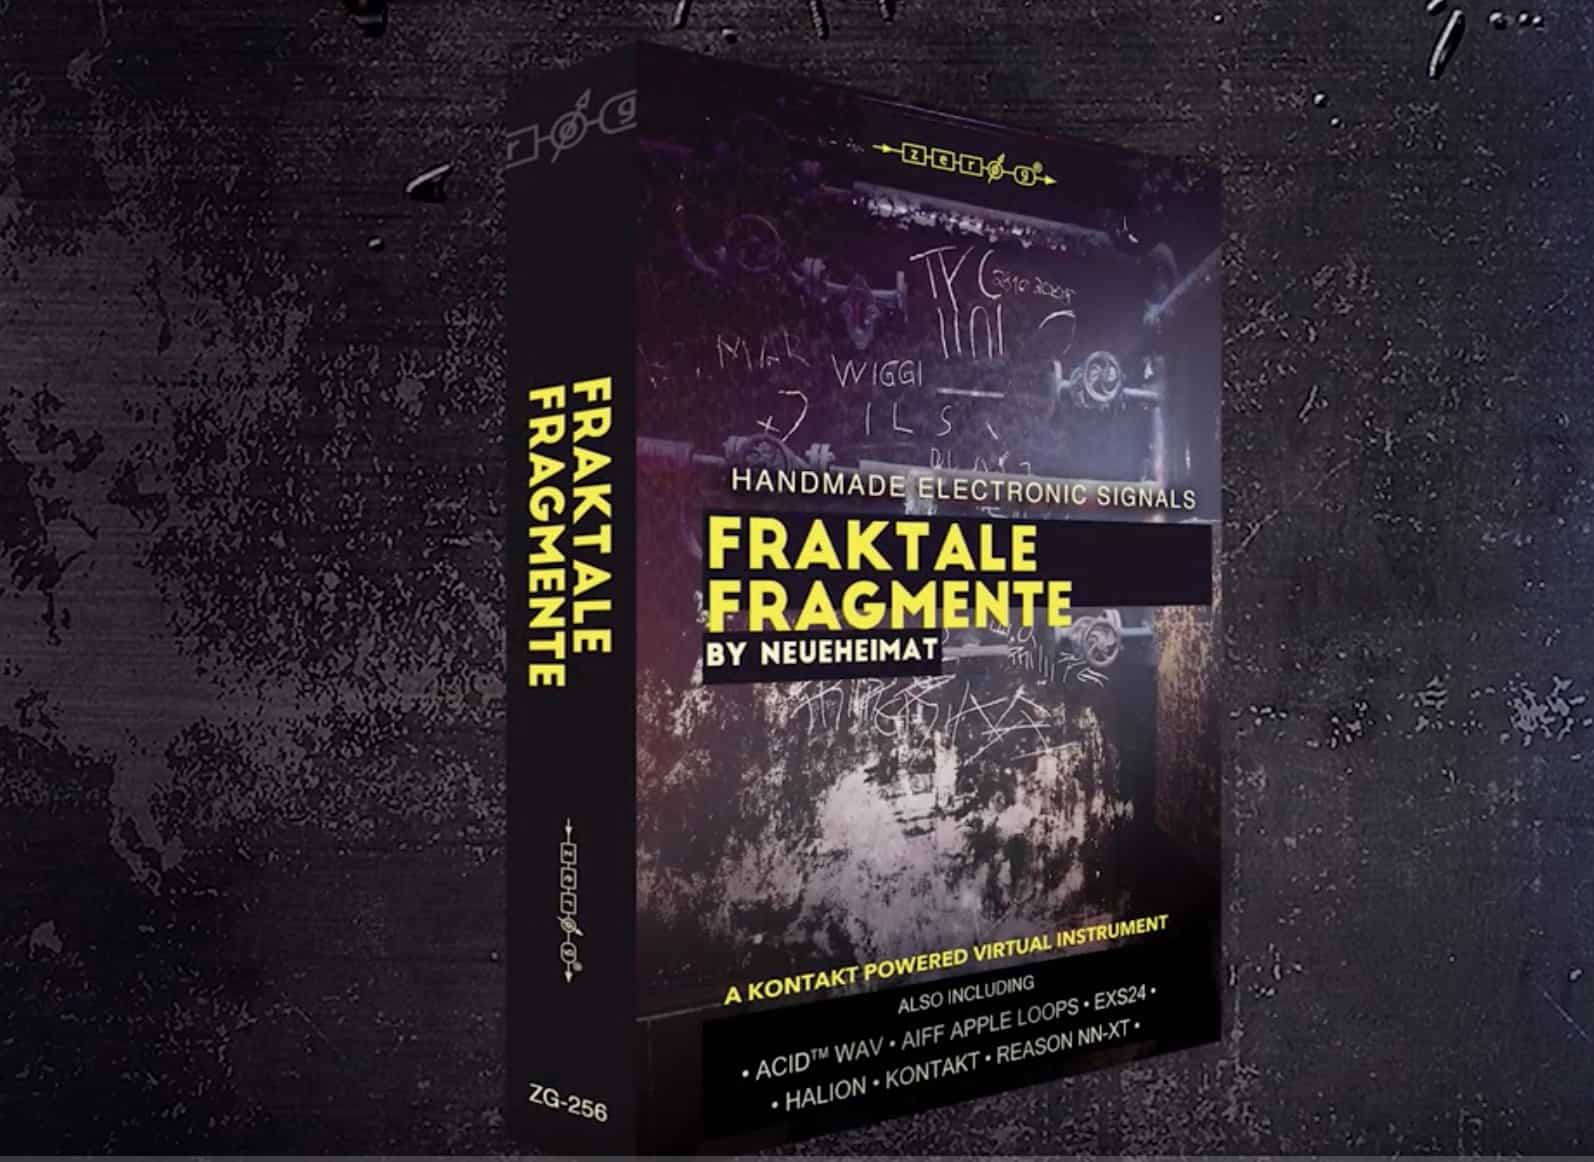 ZERO G Releases Fraktale Fragmente